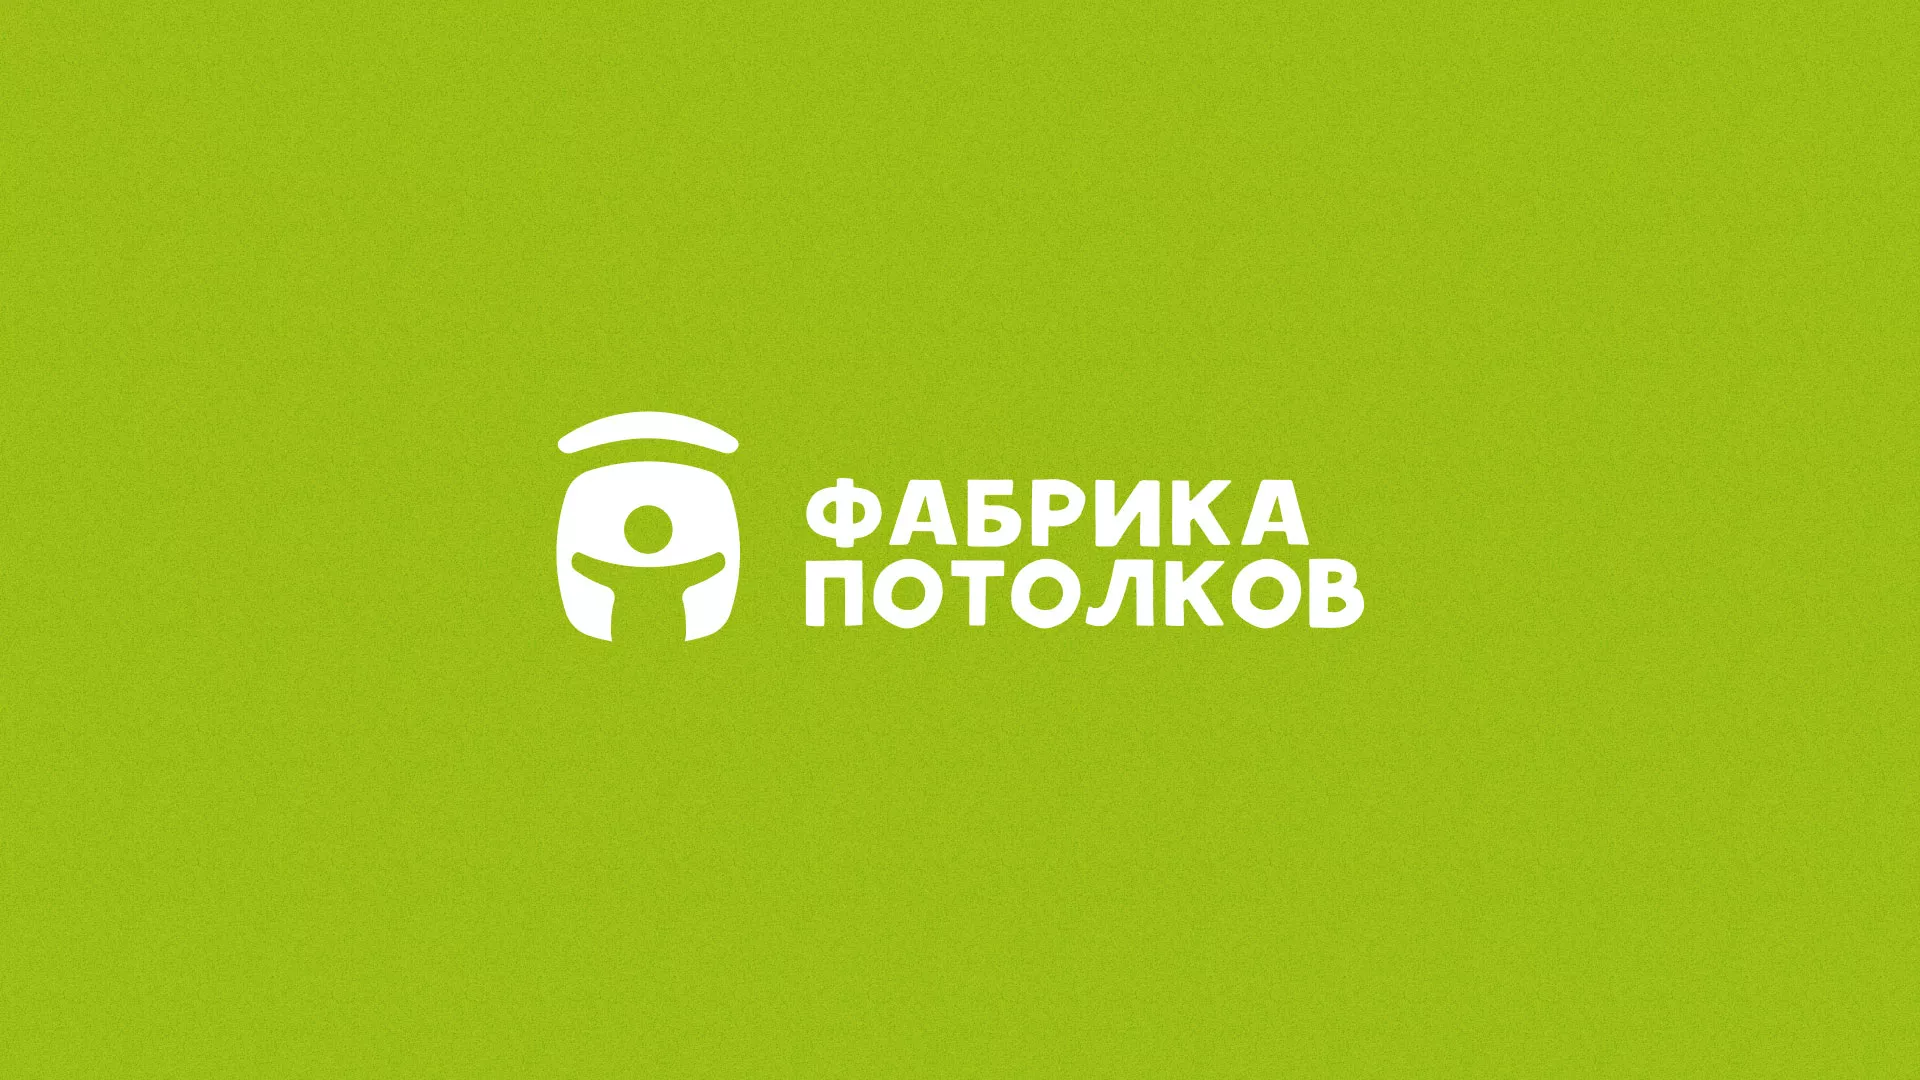 Разработка логотипа для производства натяжных потолков в Железногорске-Илимском